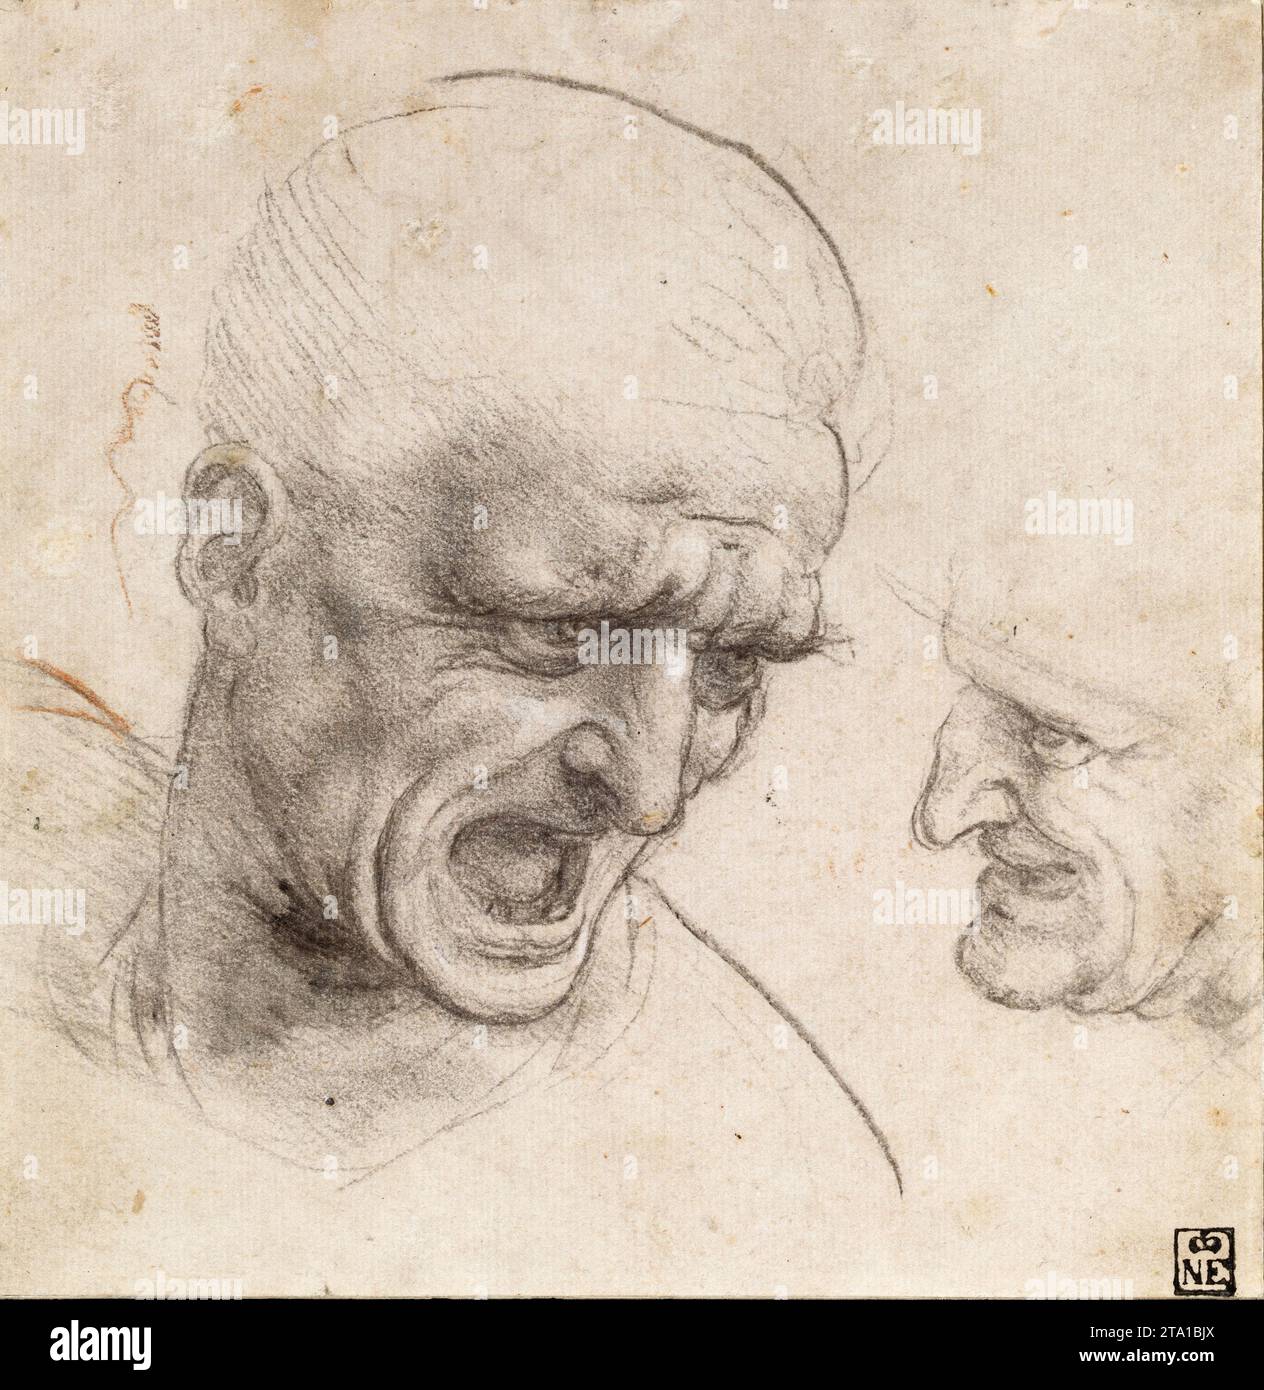 Leonardo Da Vinci - étude des têtes de deux guerriers pour la bataille d'Anghiari (c 1504-1505). Craie noire ou fusain, quelques traces de craie rouge sur paperjpg Banque D'Images